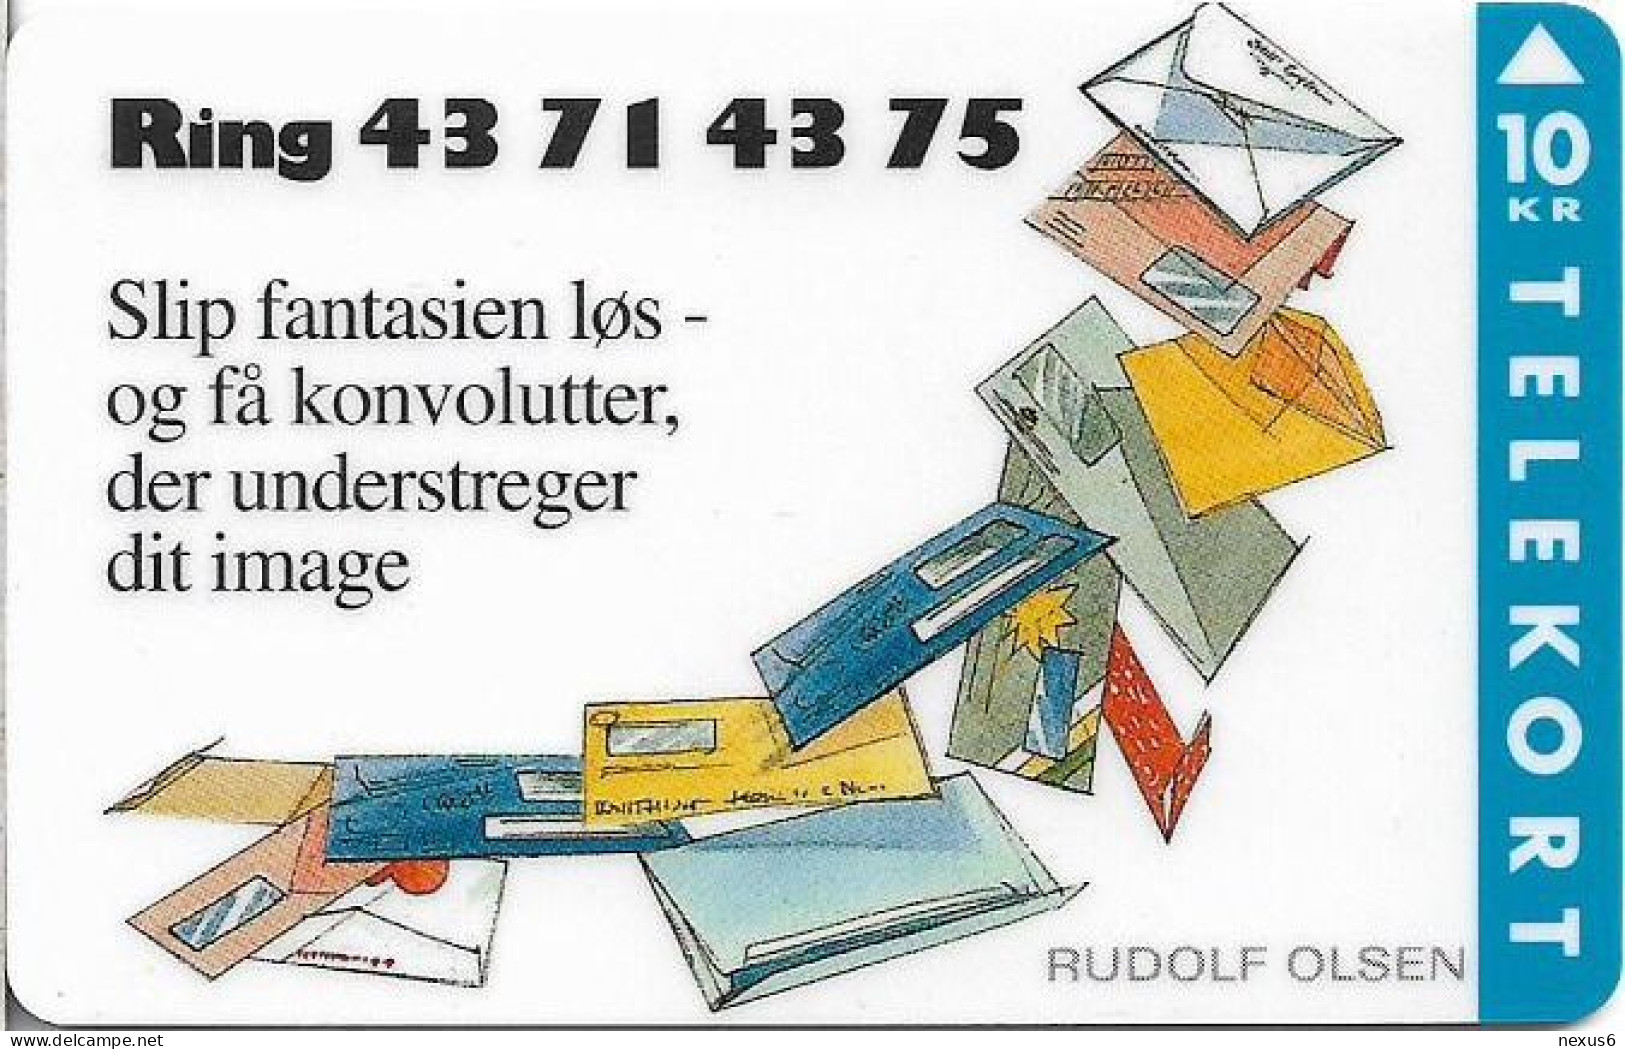 Denmark - KTAS - Rudolf Olsen Envelope Factory - TDKP111 - 10.1994, 2.000ex, 10kr, Used - Denmark